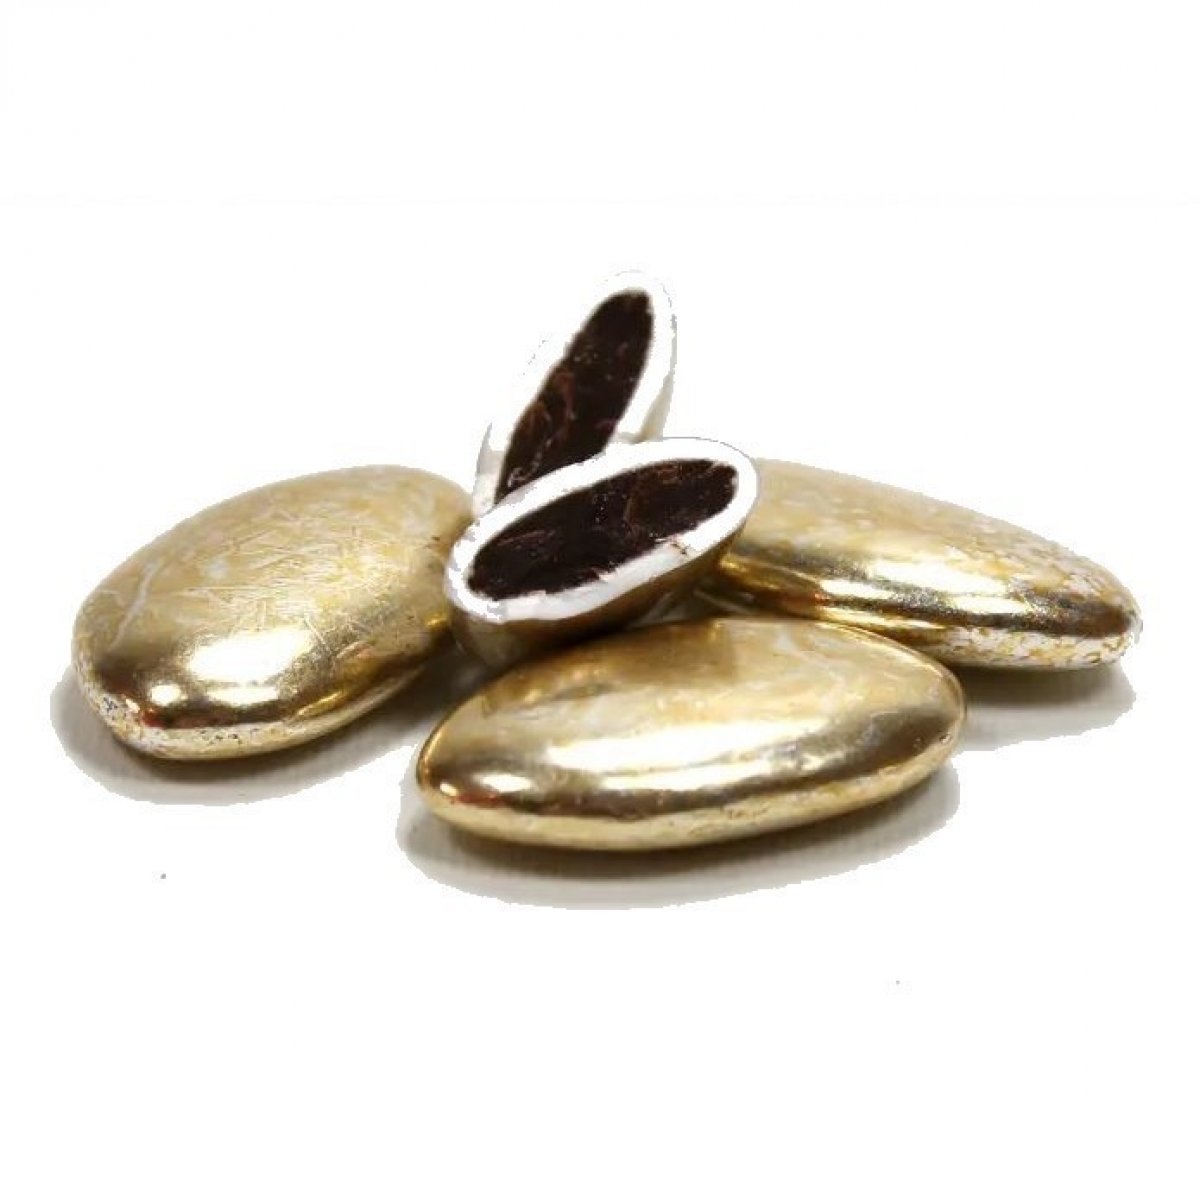 Dragées or au chocolat x 500 Gr